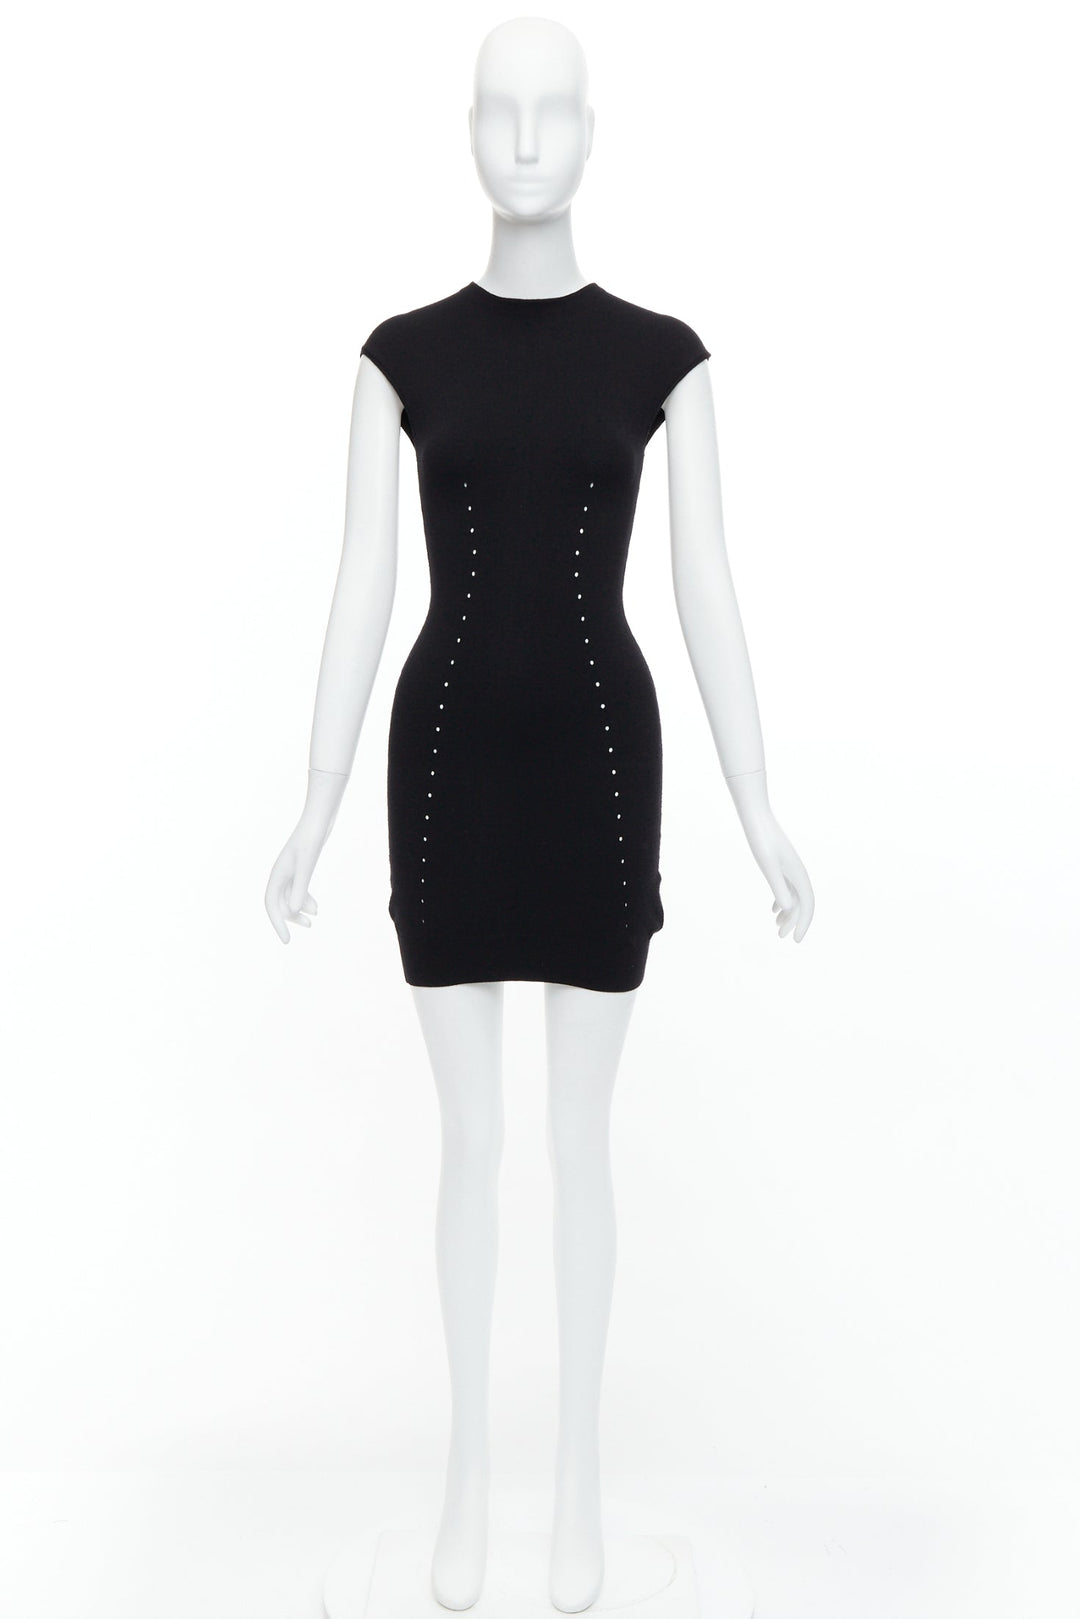 ALEXANDER WANG black wool blend pointelle knit bodycon dress XS